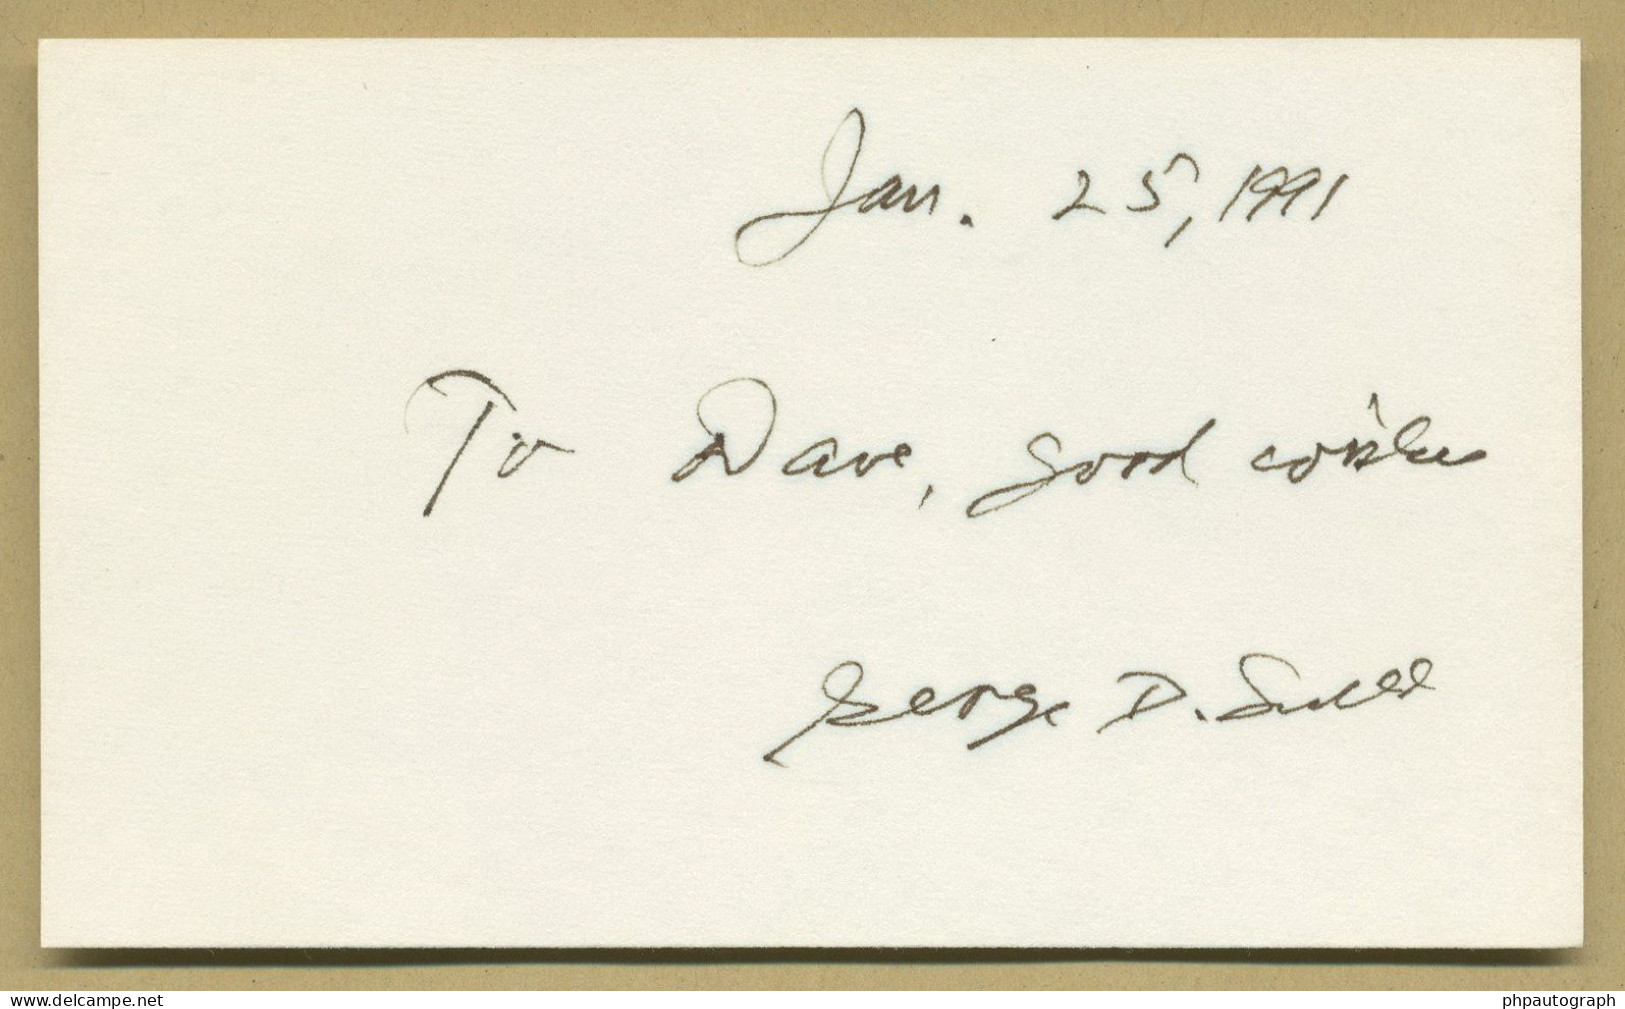 George Davis Snell (1903-1996) - Geneticist - Signed Card + Photo - 1991 - Nobel Prize - Erfinder Und Wissenschaftler